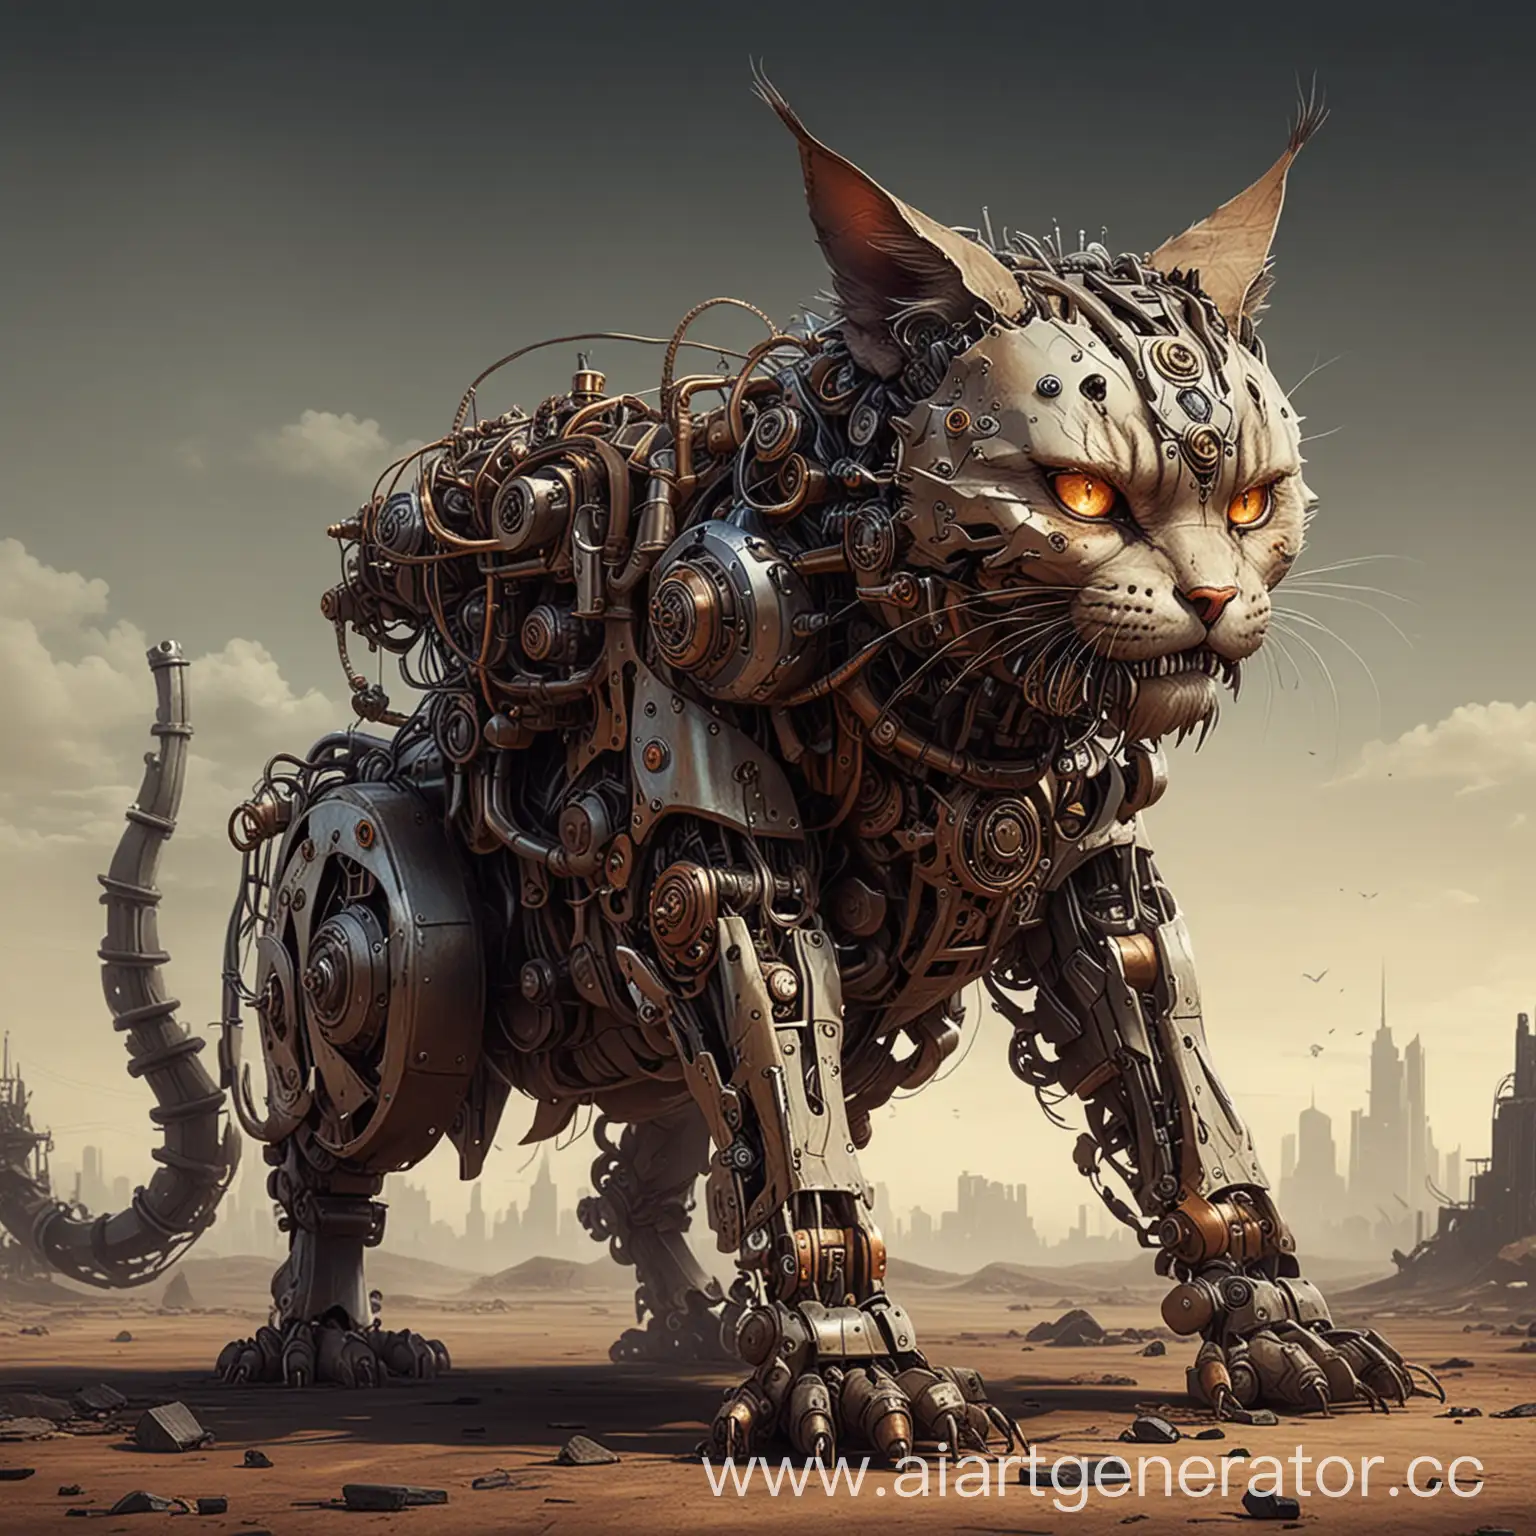 Giant-Mechanical-Evil-Cat-Named-Kissenger